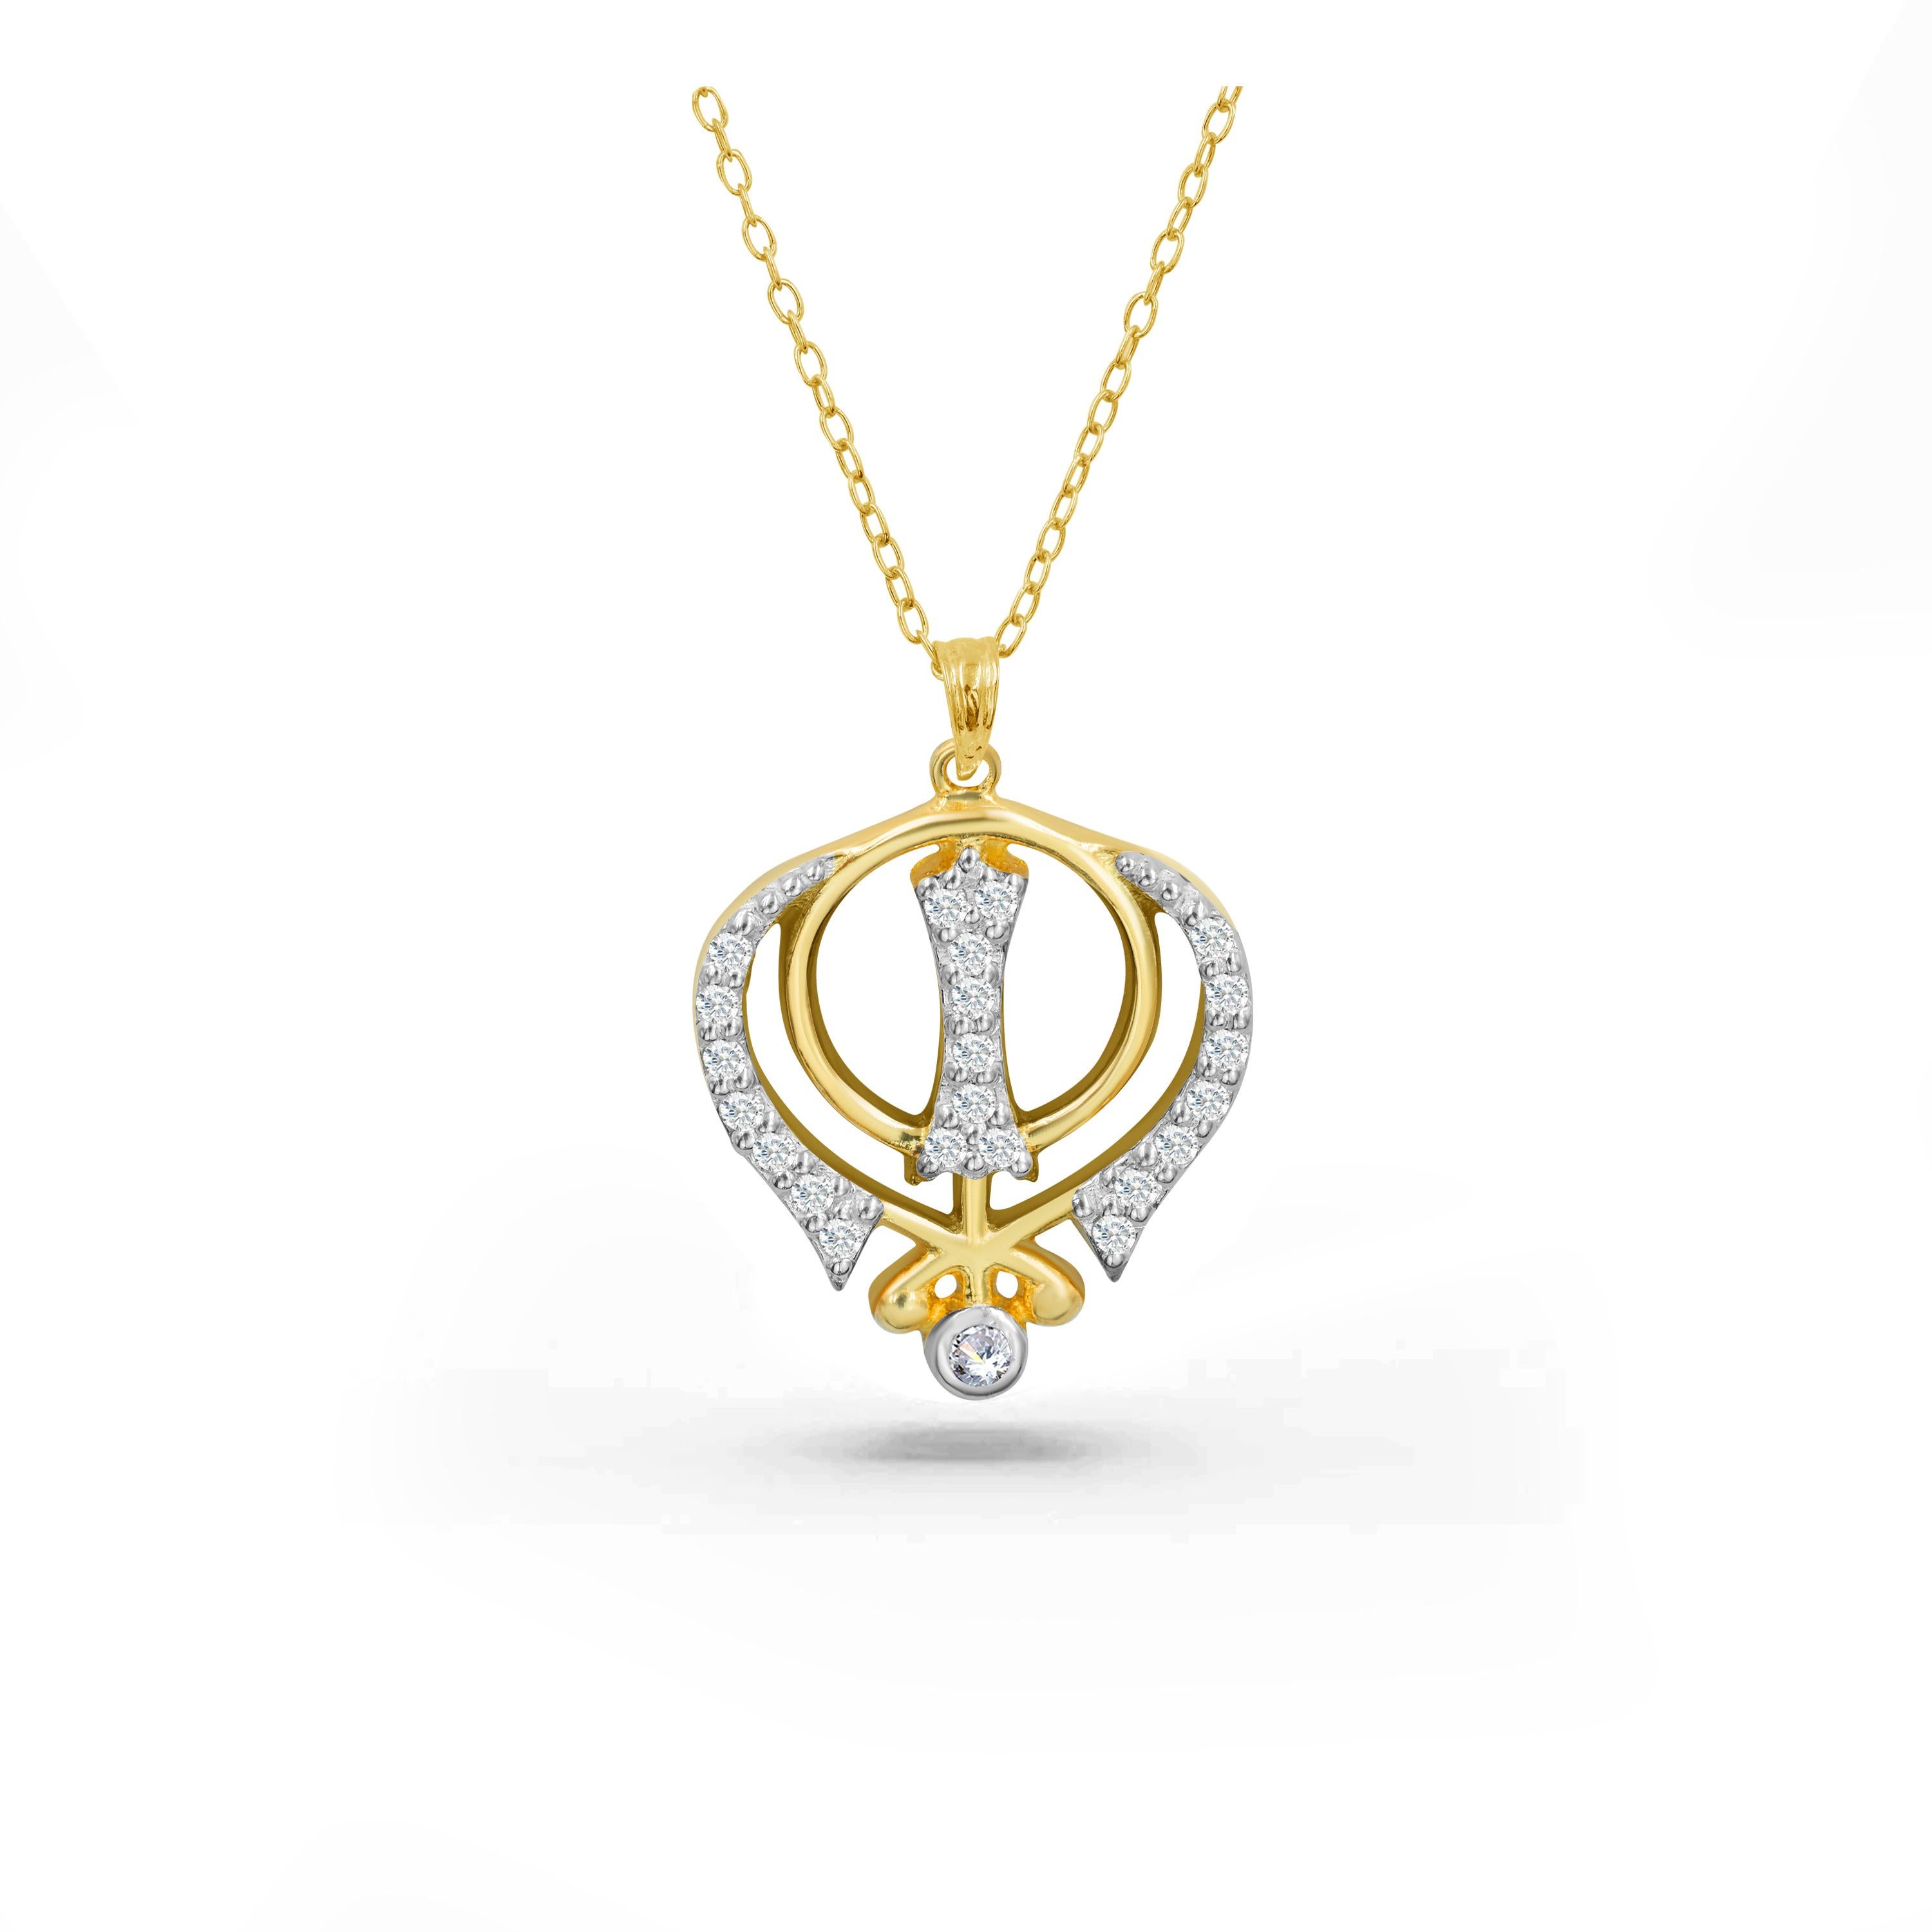 Le collier en diamants Khanda, fabriqué à la main, est idéal à porter au quotidien pour apporter paix intérieure et spiritualité. Nous garantissons une qualité de premier ordre avec un diamant de 0,12 carat magnifiquement serti dans ce collier. Ce